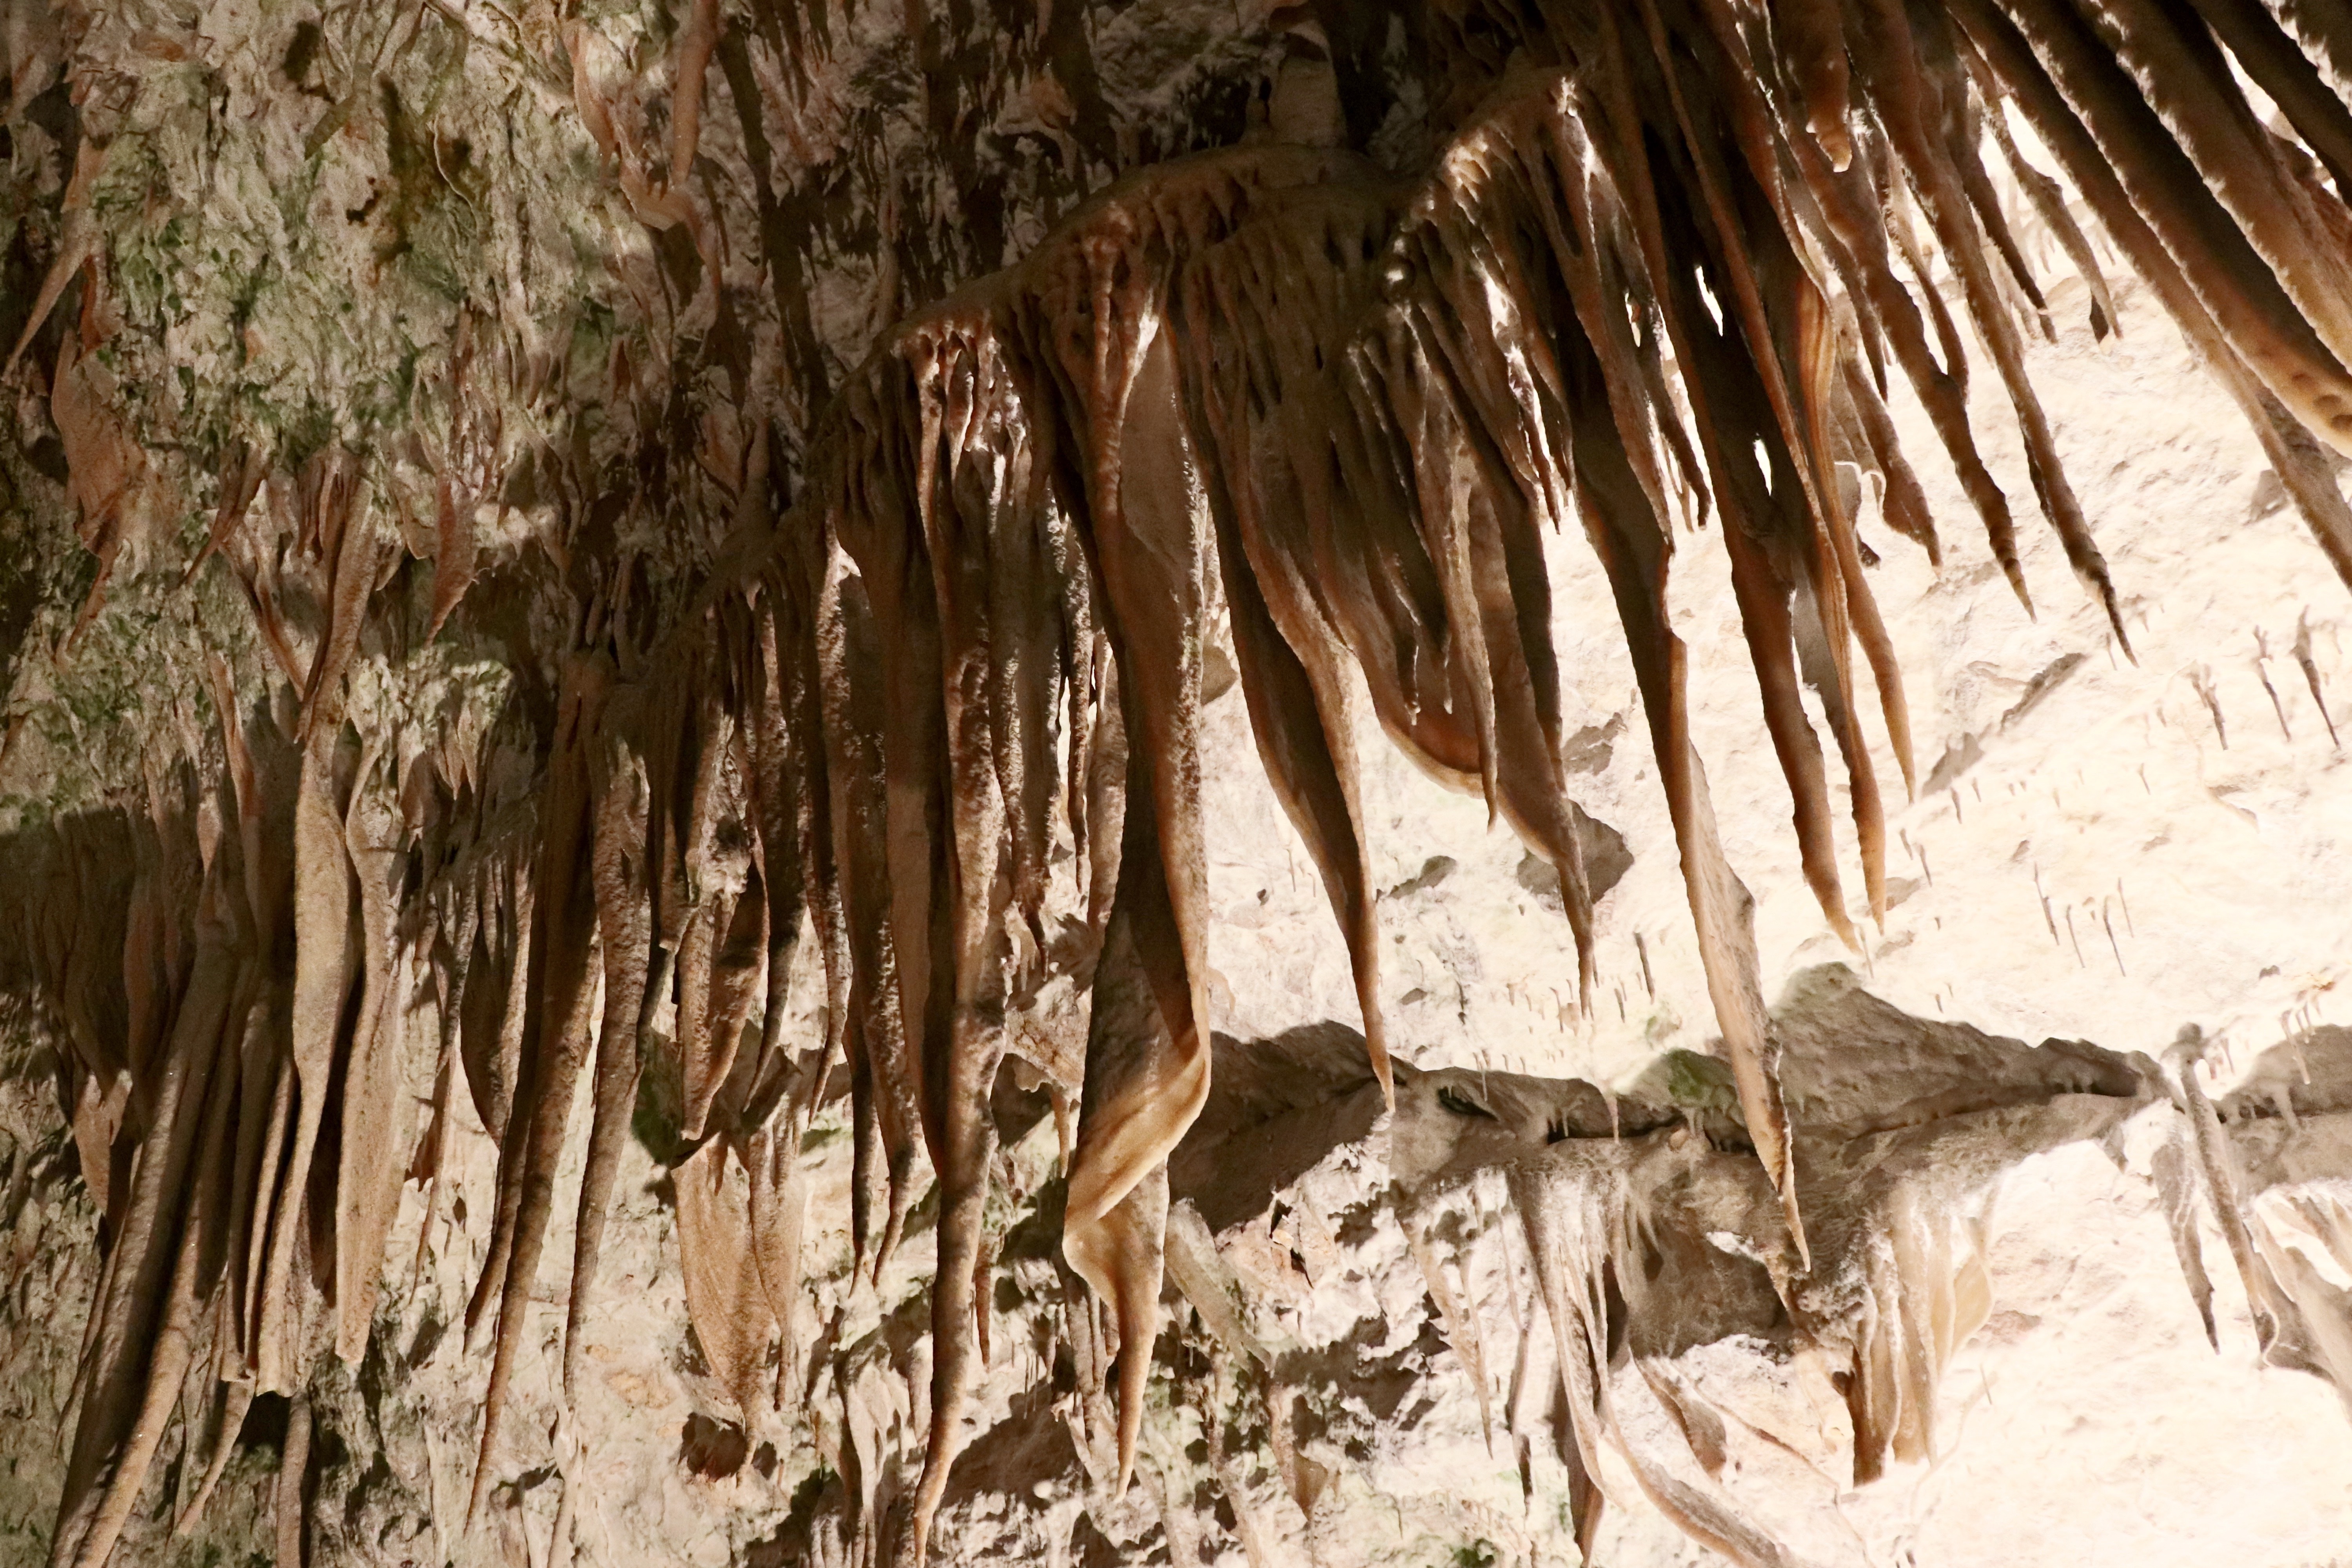 Peștera Postojna